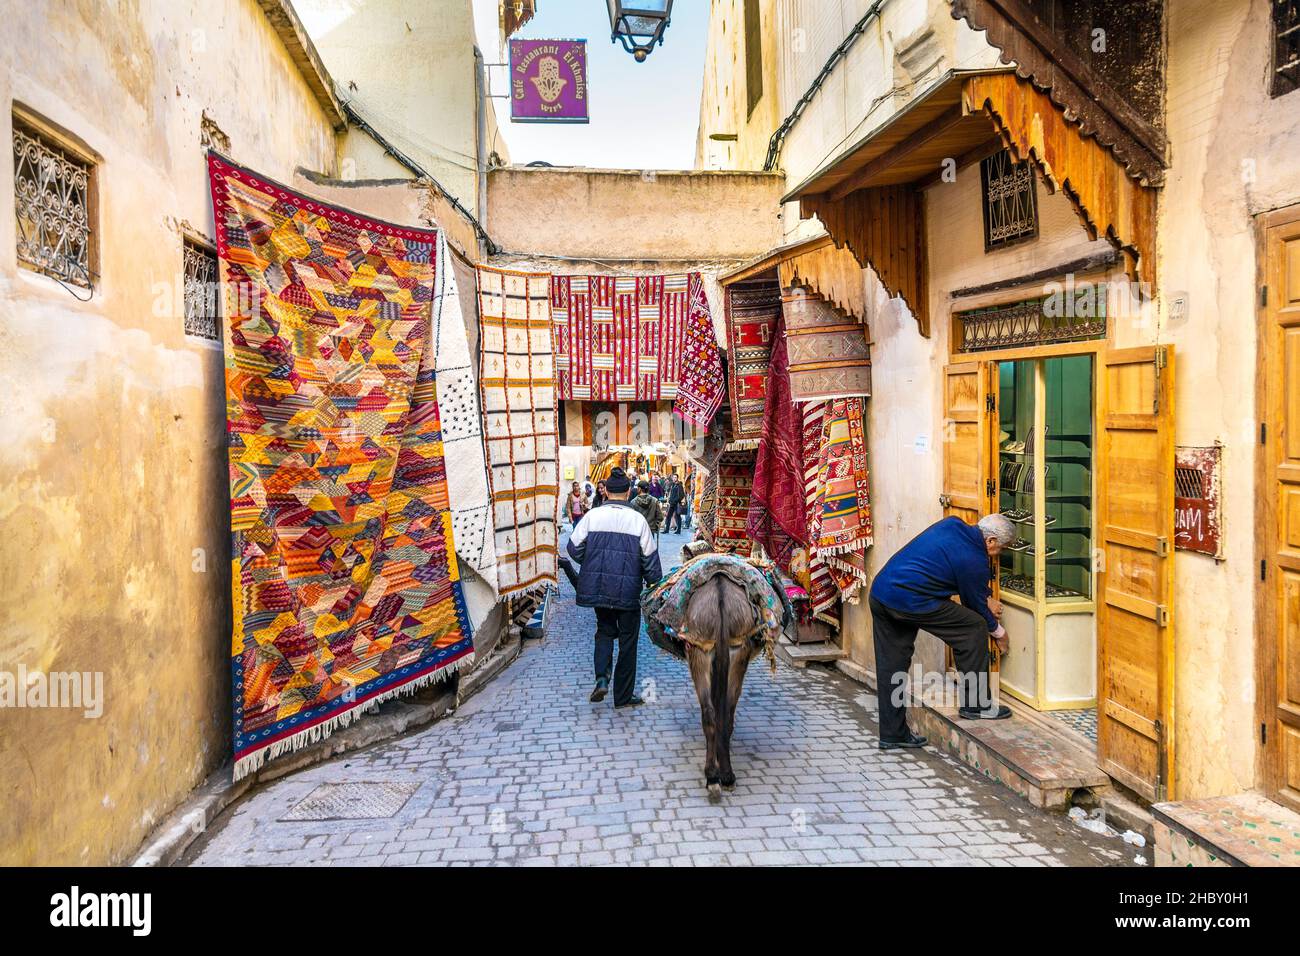 Uomo che cammina con asino, strada stretta nei souk della medina con negozi di tappeti marocchini, Fes, Marocco Foto Stock